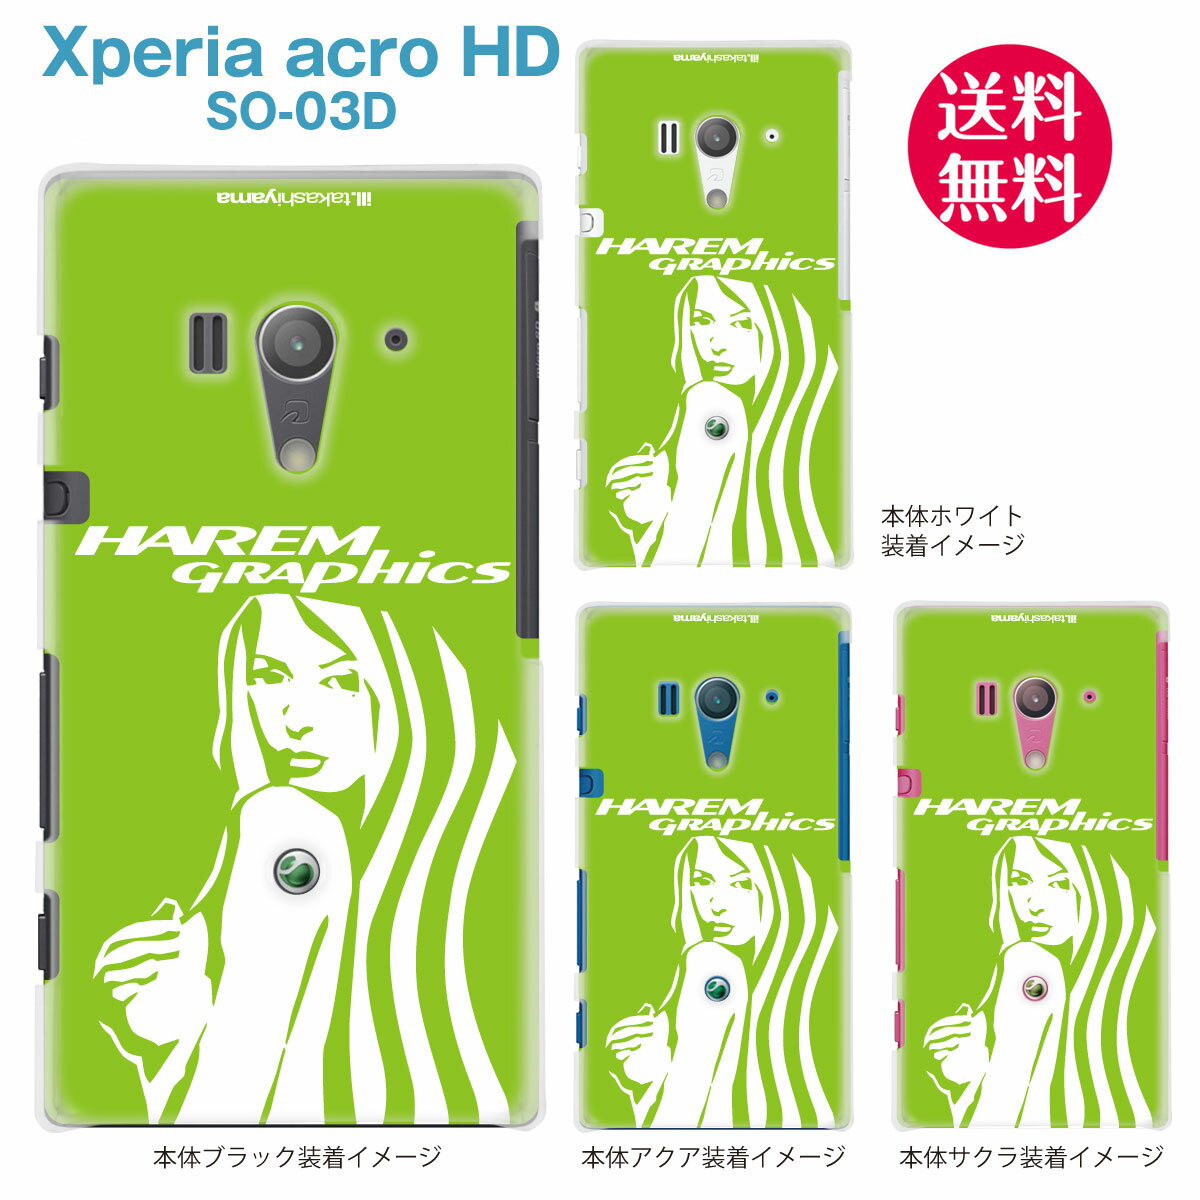 【HAREM GRAPHICS】【Xperia acro HD SO-03D】【docomo】【au】【IS12S】【ケース】【カバー】【スマホケース】【クリアケース】 hgx-so03d-0019b